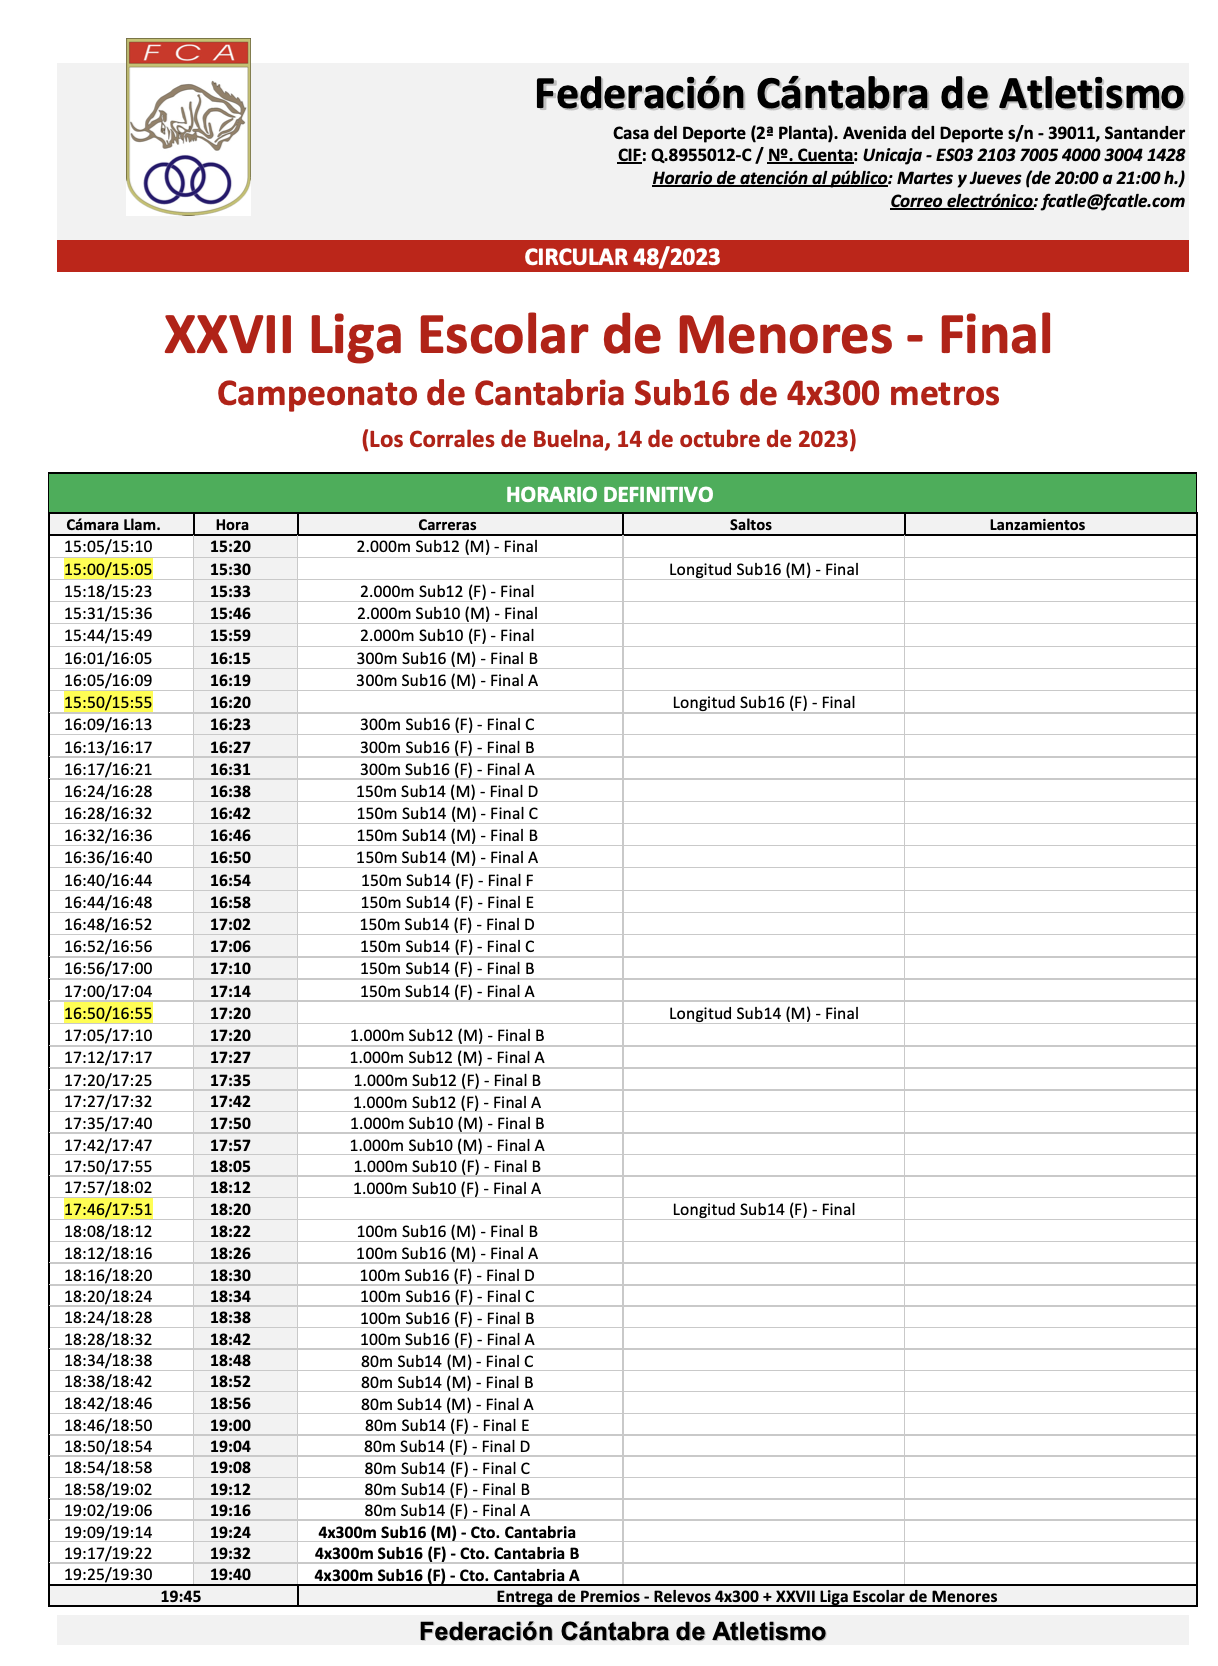 XXVII Liga Escolar de Menores - Final / Campeonato de Cantabria Sub16 de 4x300 metros @ Los Corrales de Buelna, Cantabria